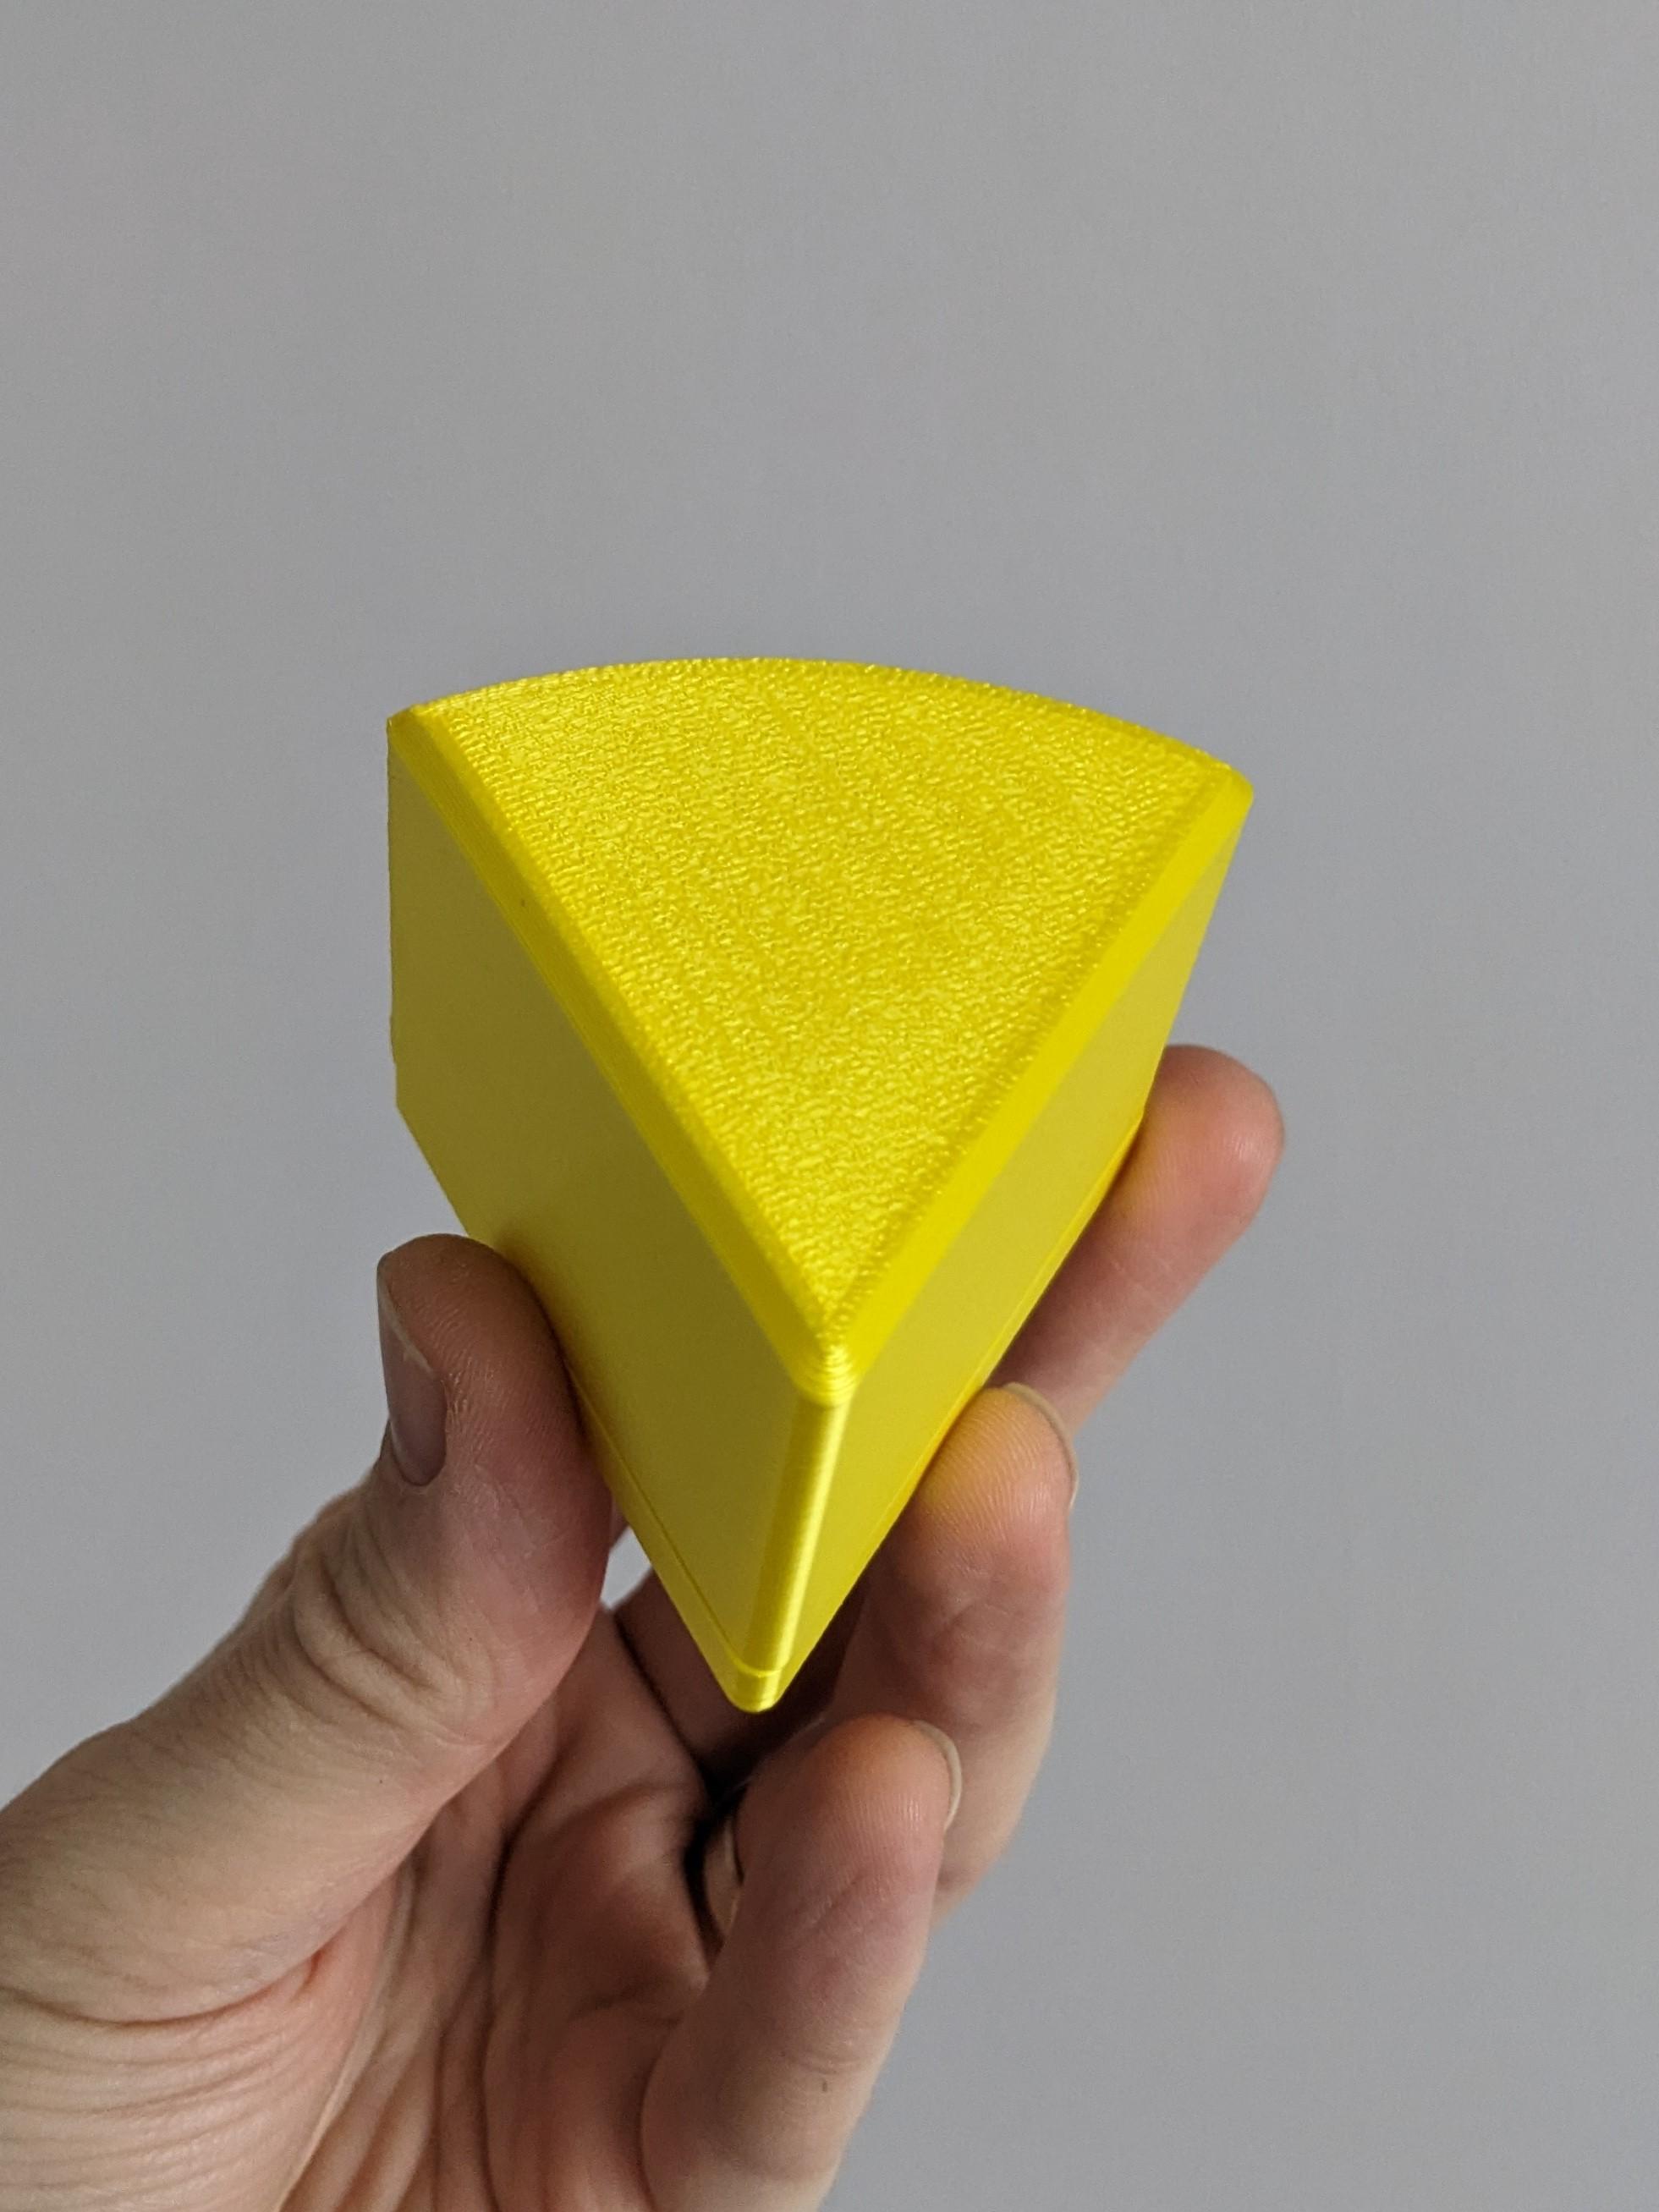 Cheesy Box - No Holes 3d model